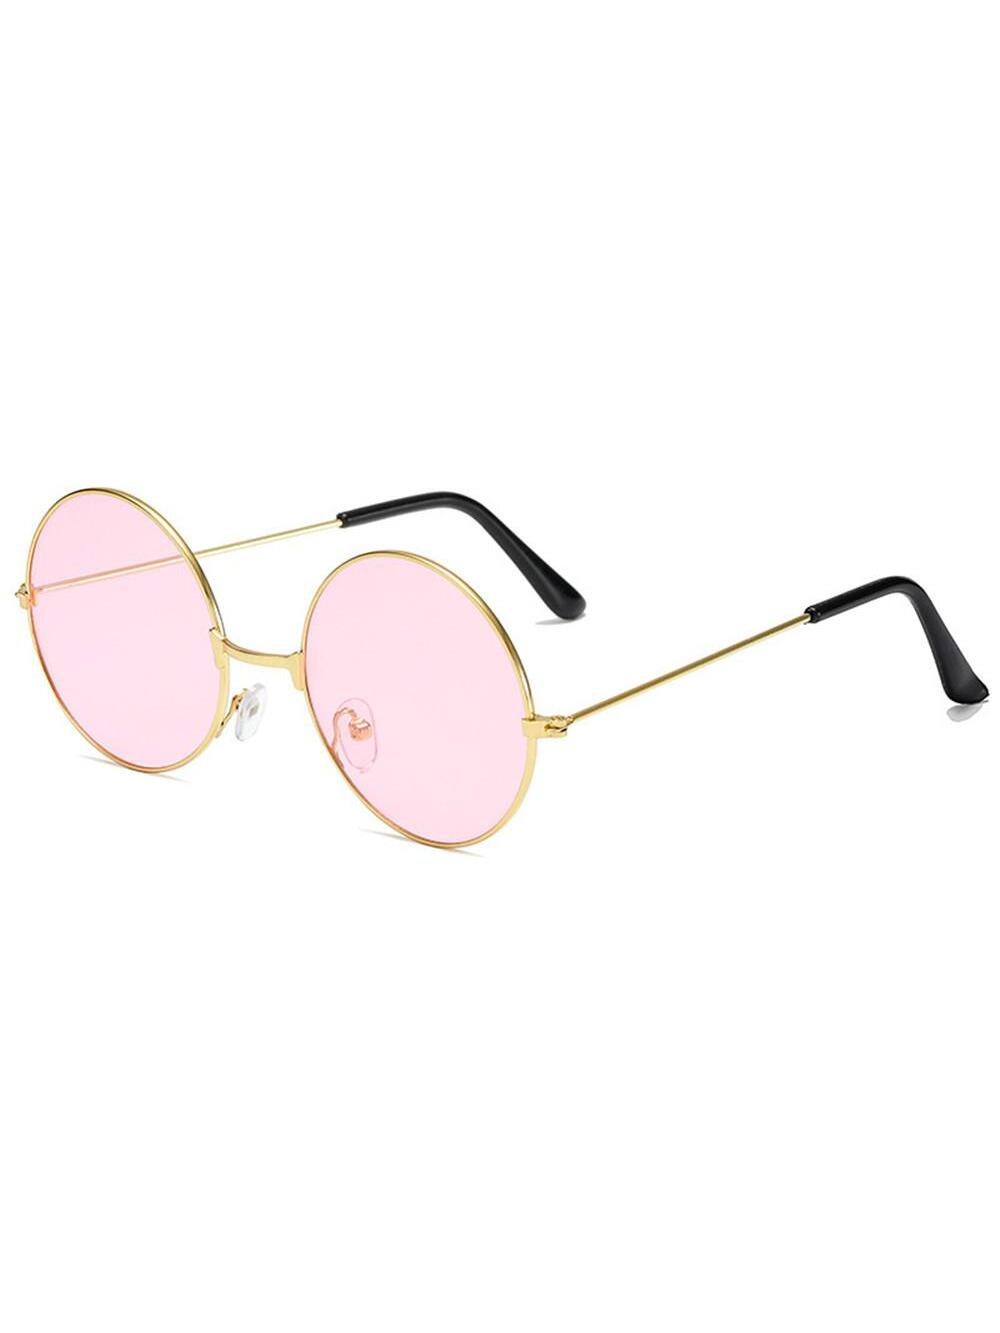 цена Ретро круглые солнцезащитные очки в стиле хиппи, розовый